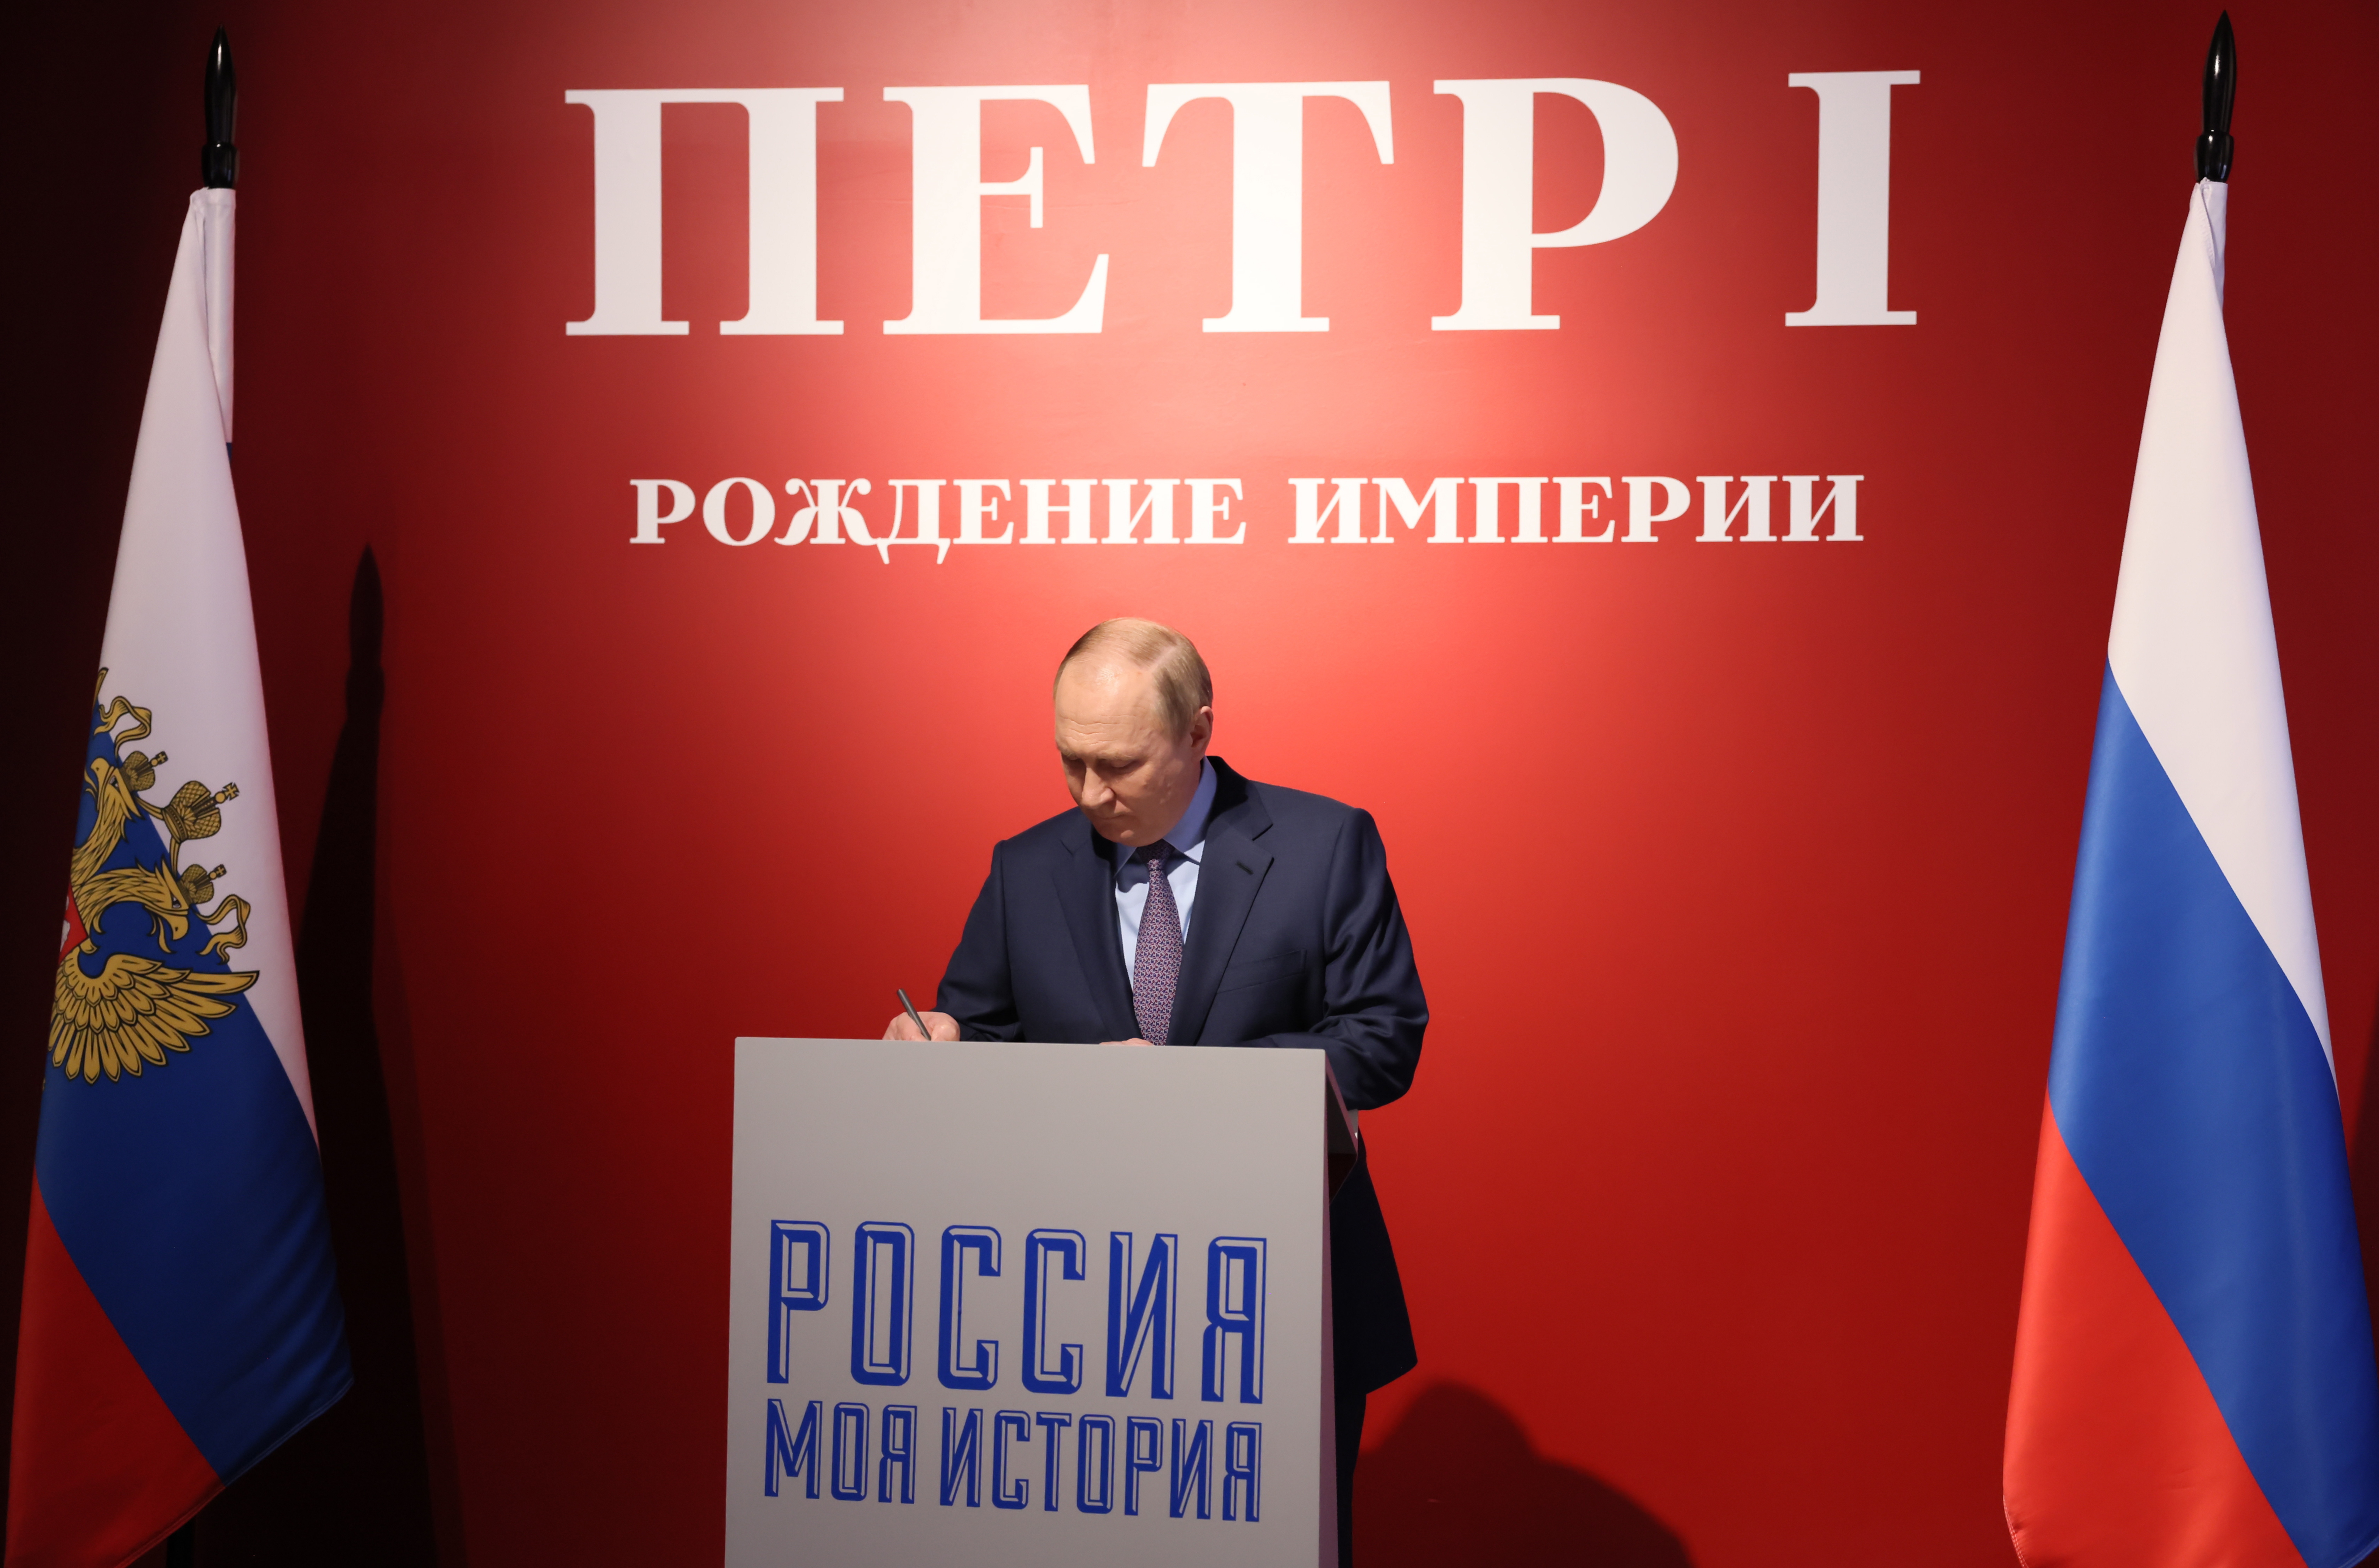 Владимир Путин подписывает памятную книгу во время визита на выставку, посвященную 350-летию Петра I. 9 июня 2022 года. Фото EPA/MIKHAIL METZEL/KREMLIN POOL/Scanpix/LETA